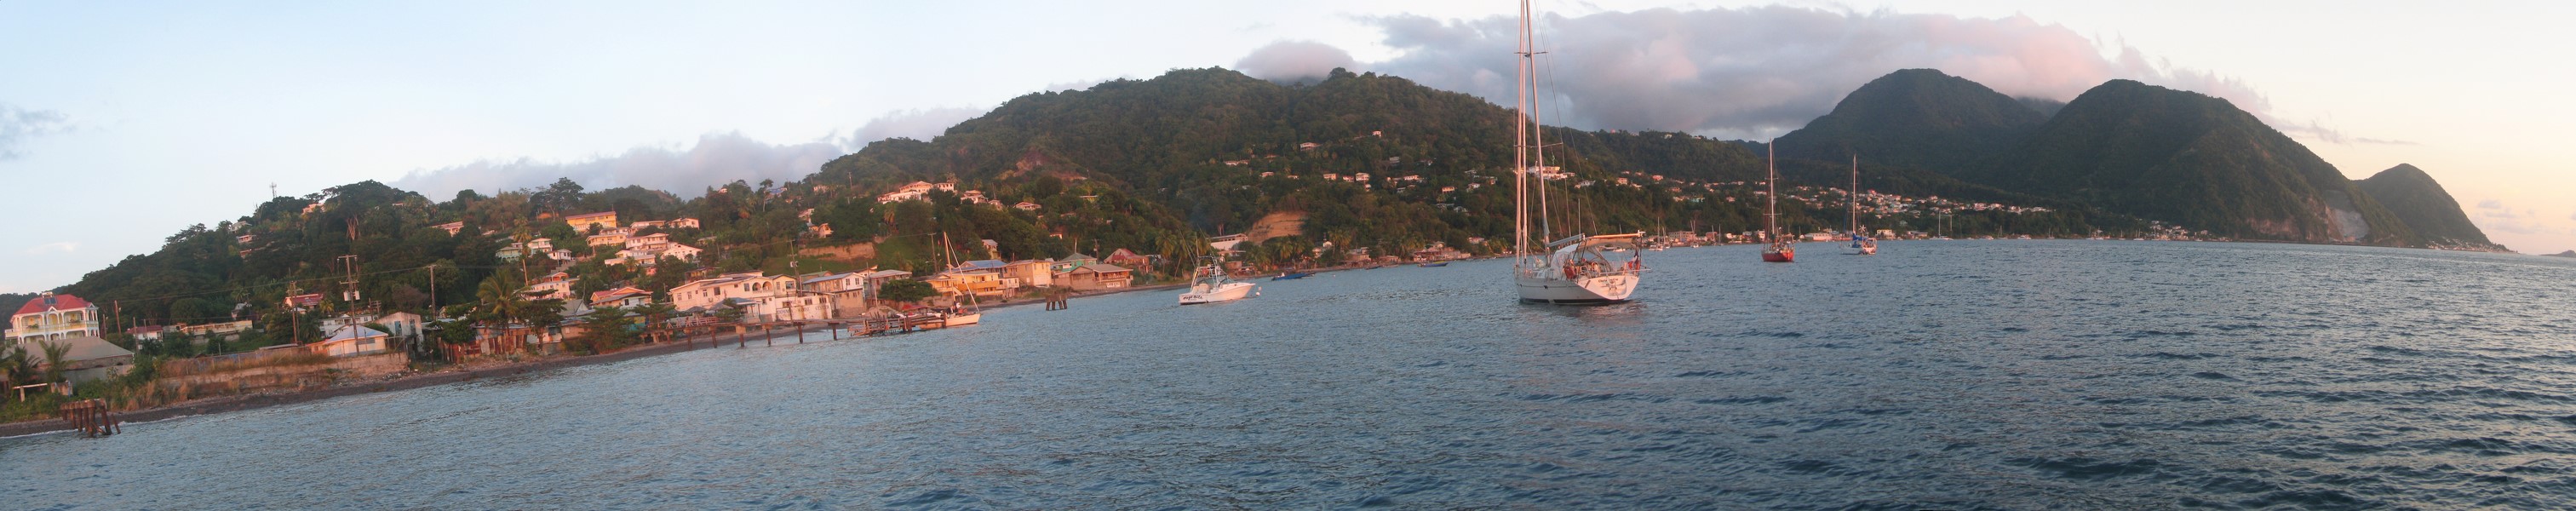 2015-02 Dominica